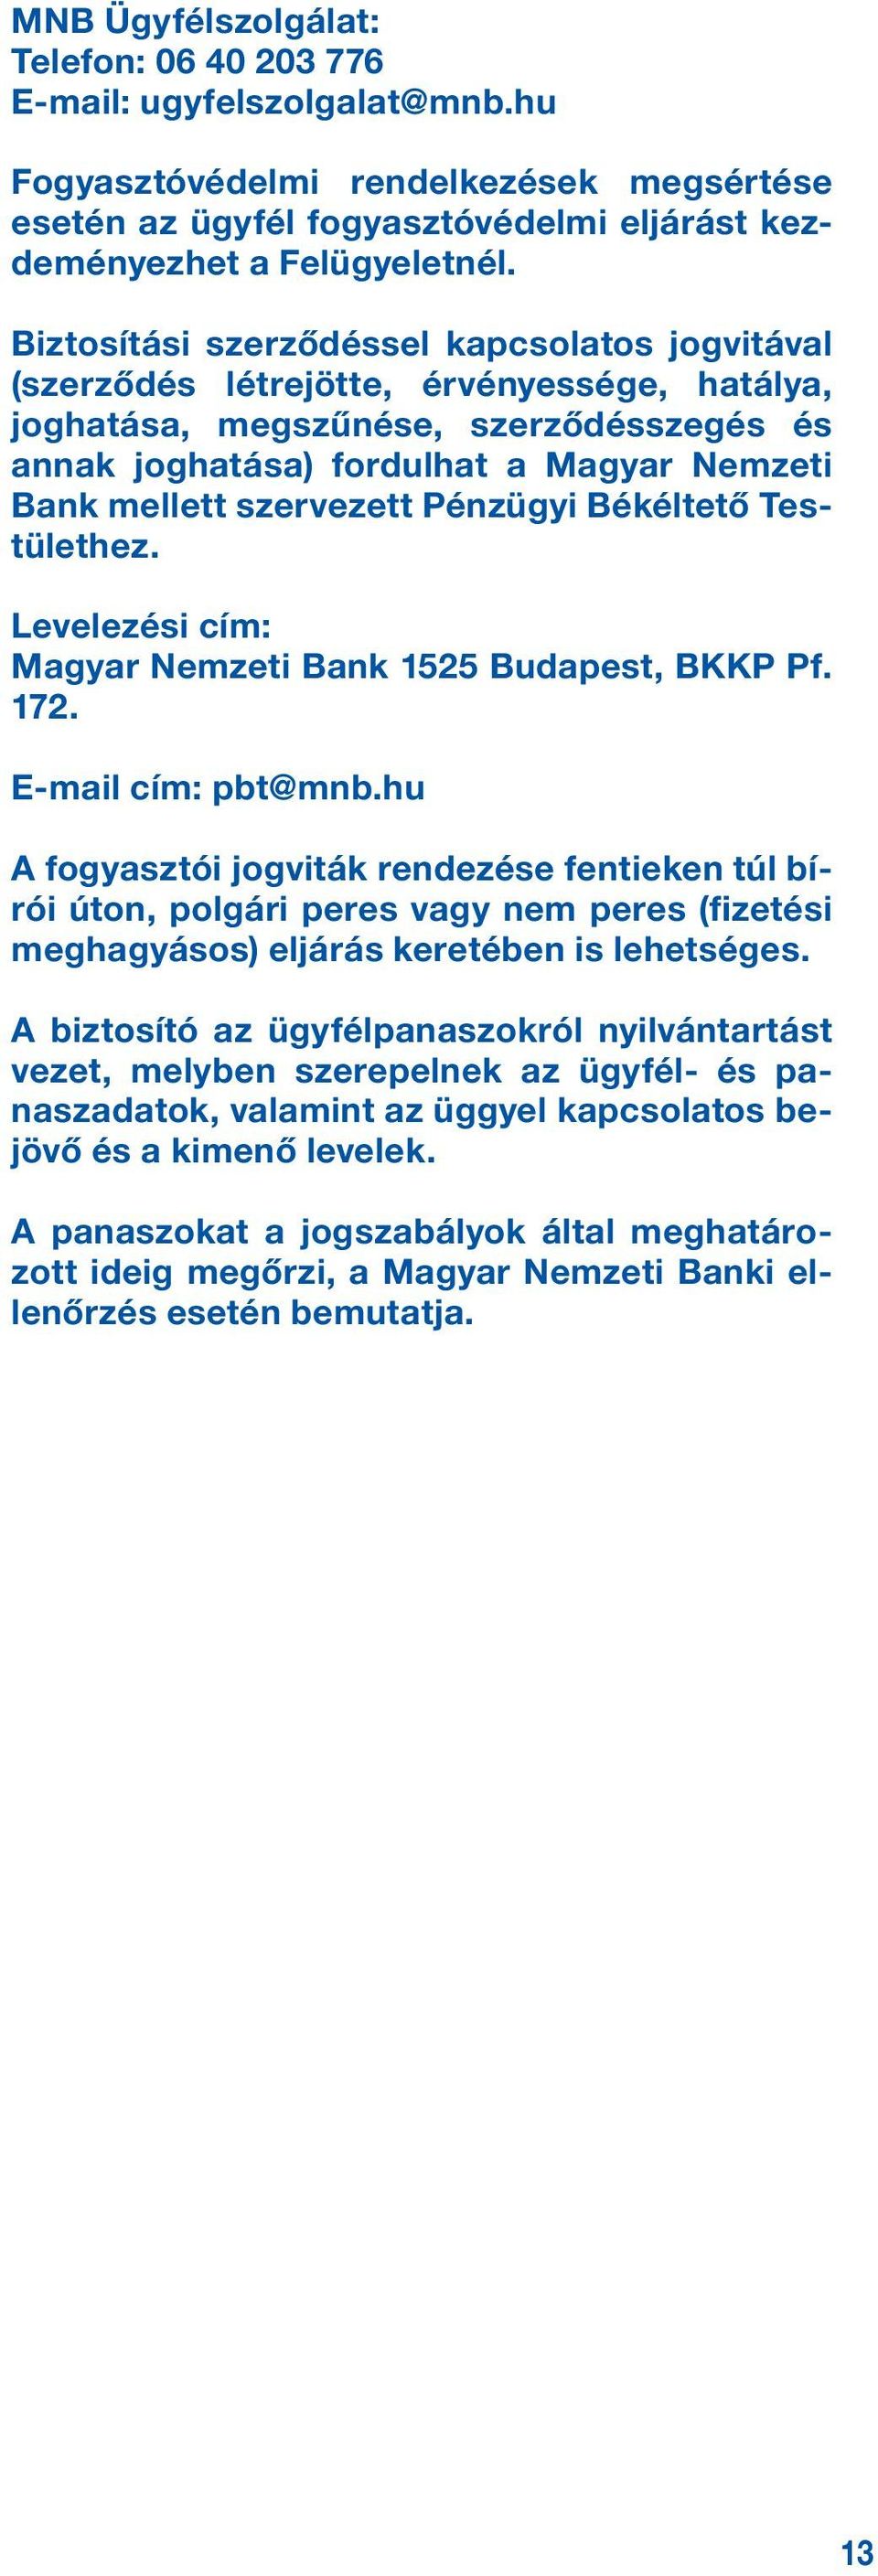 szervezett Pénzügyi Békéltető Testülethez. Levelezési cím: Magyar Nemzeti Bank 1525 Budapest, BKKP Pf. 172. E-mail cím: pbt@mnb.